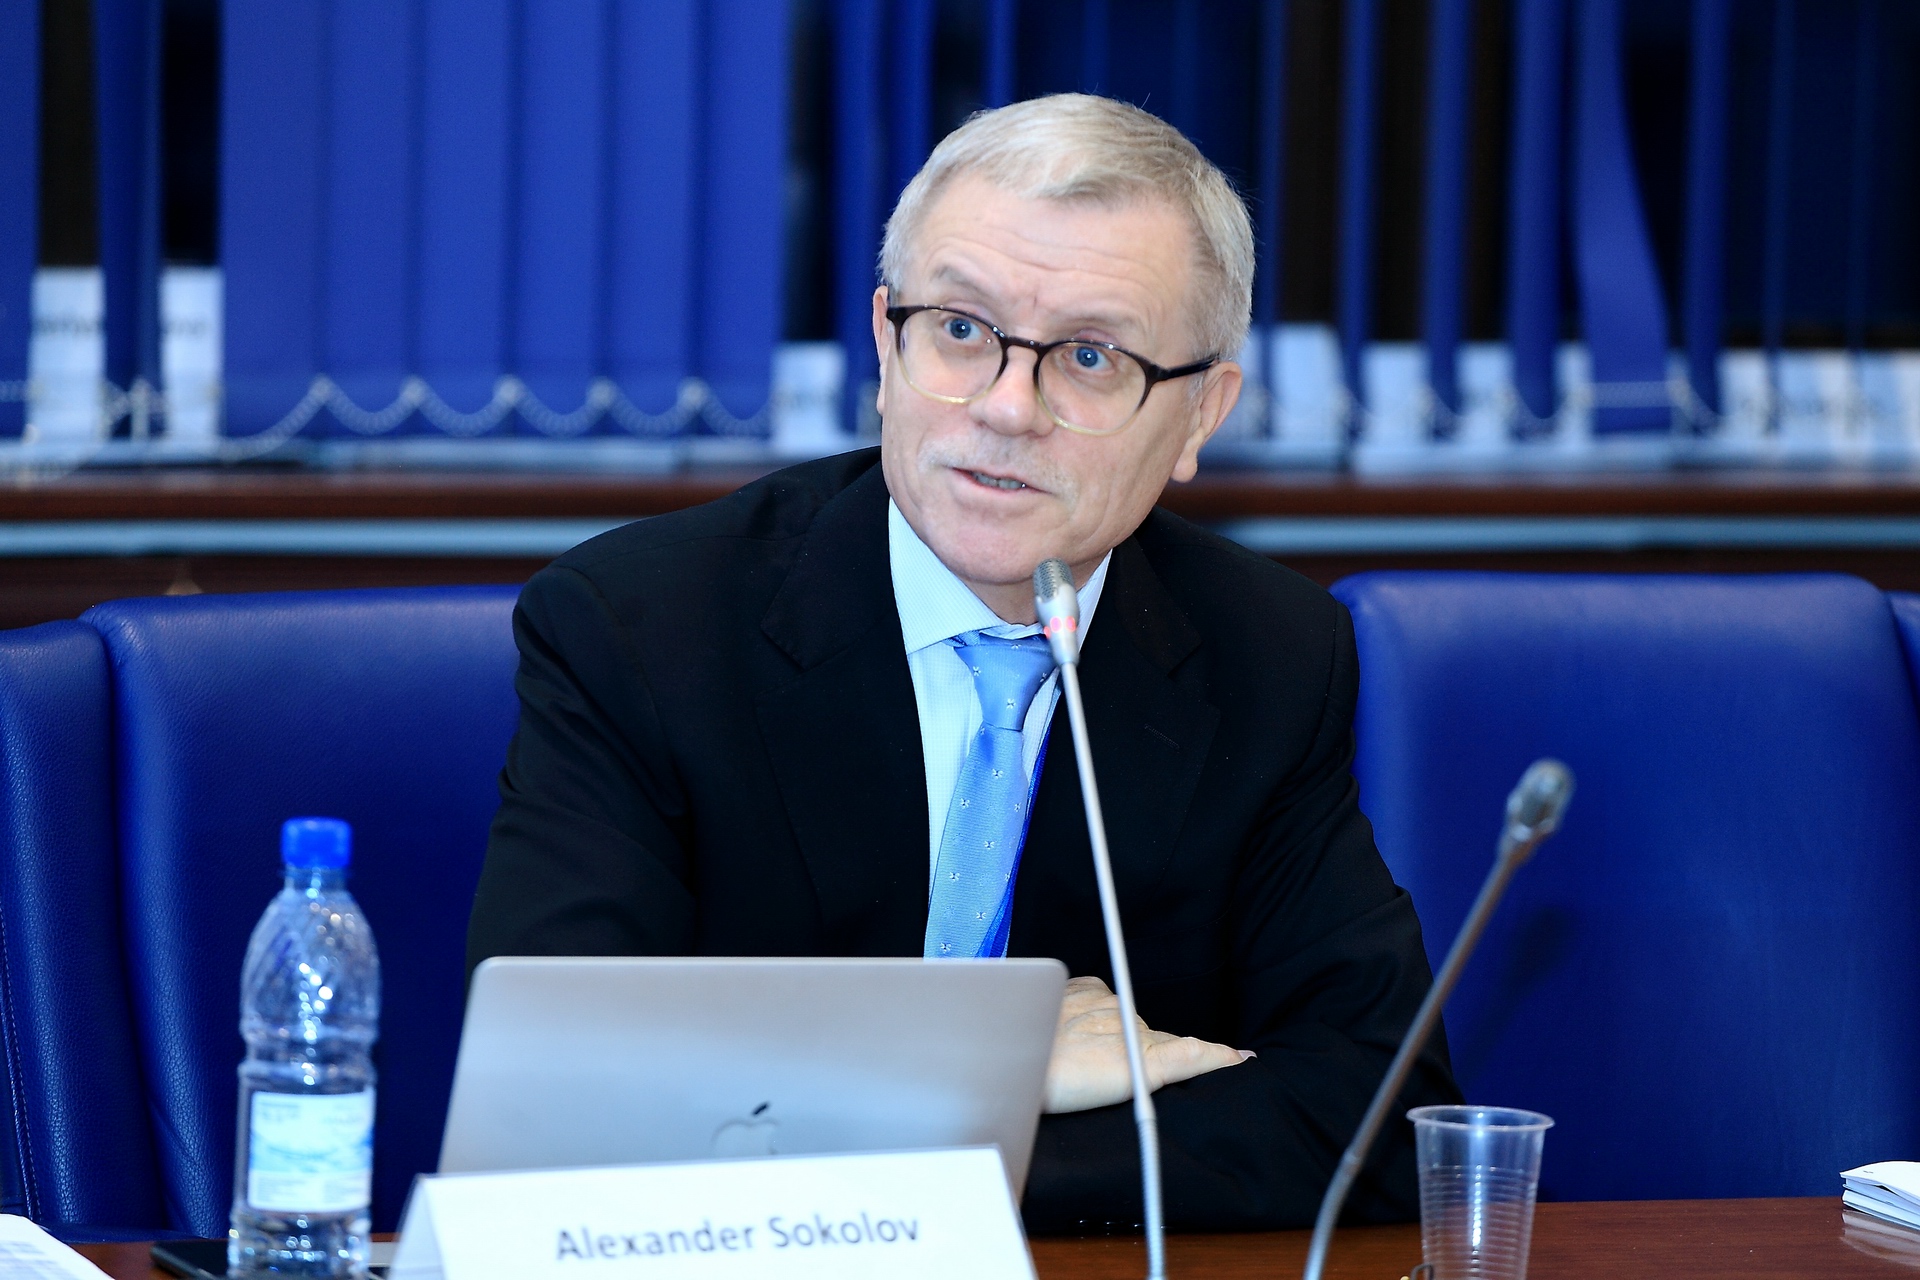 Профессор Александр Соколов, руководитель кафедры ЮНЕСКО по исследованиям будущего